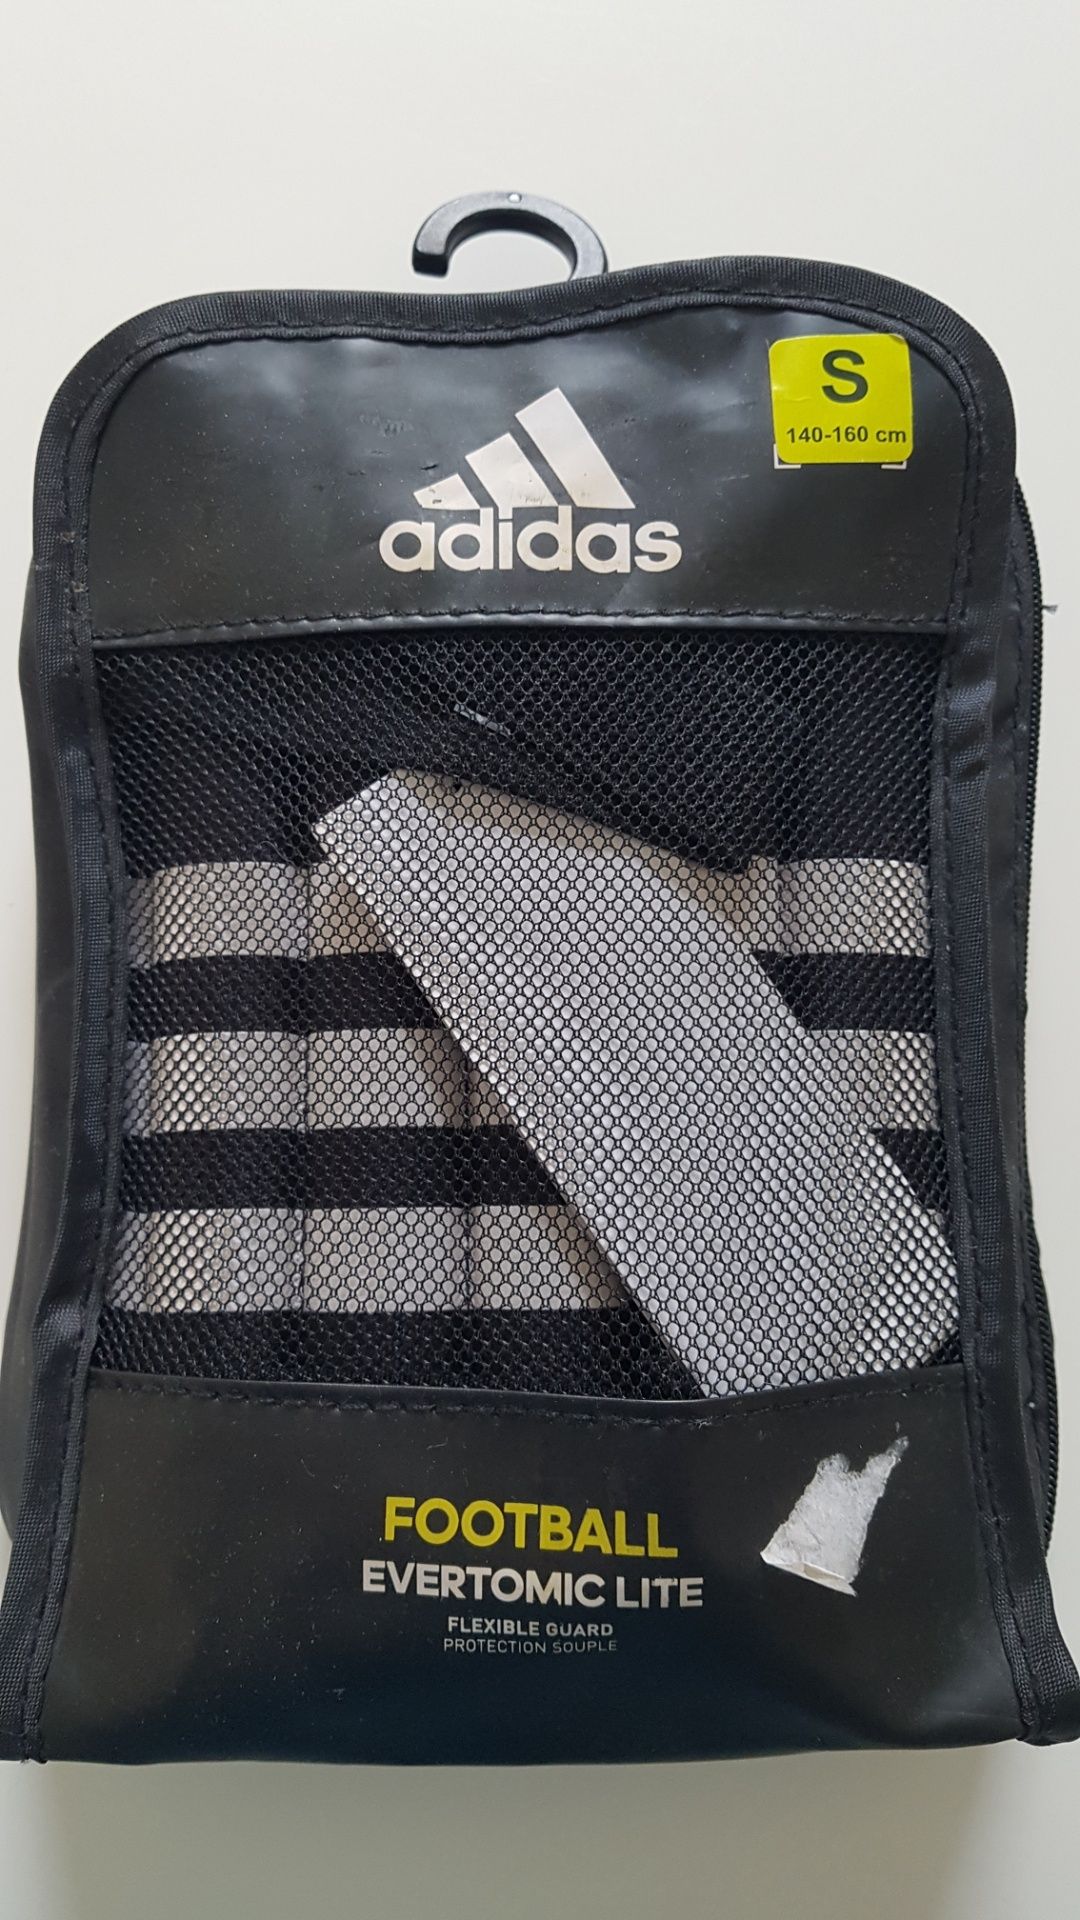 Adidas nagolenniki dziecięce ochraniacze piłkarskie